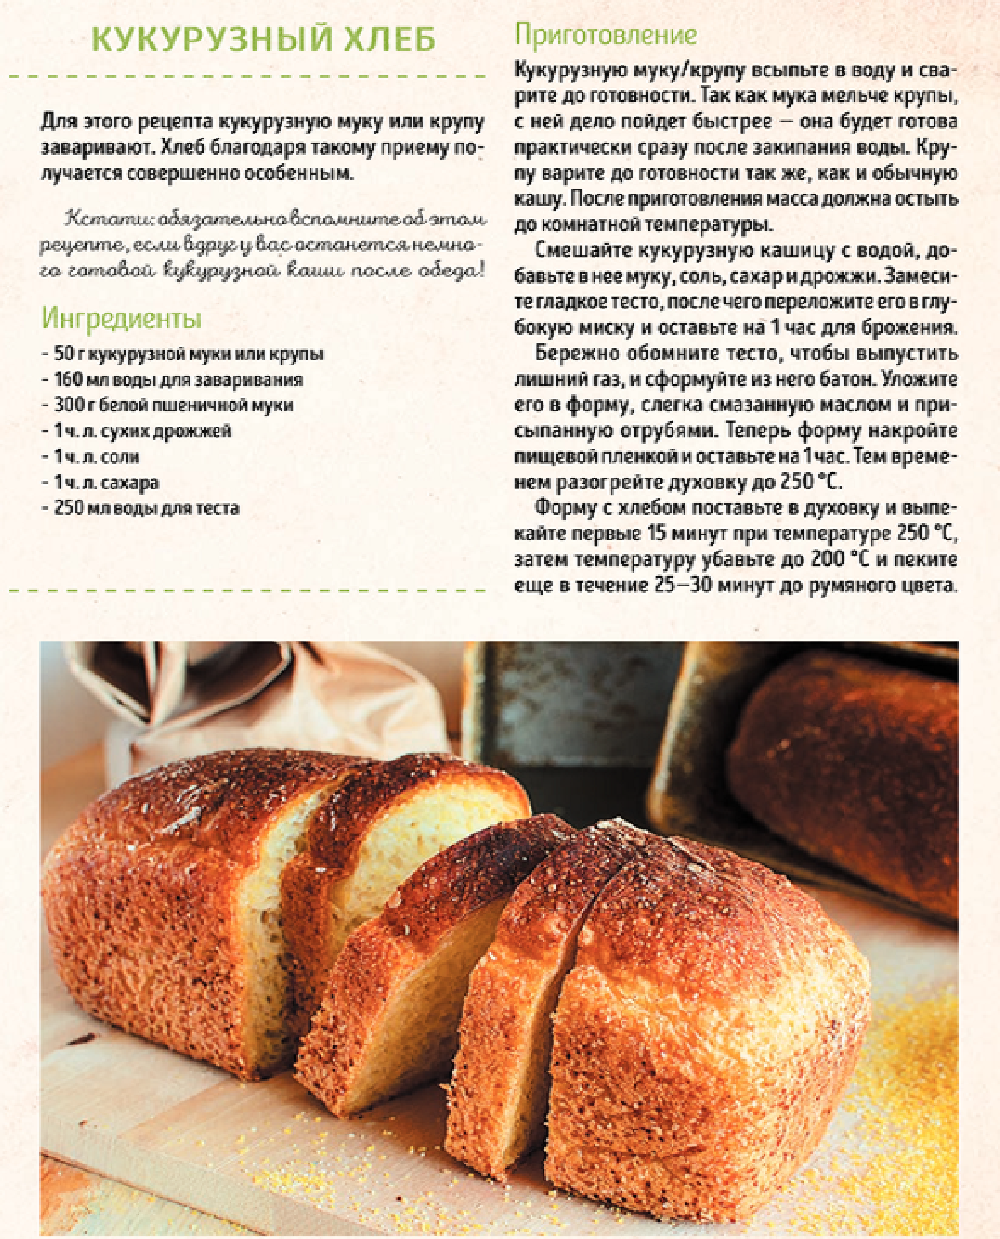 Приготовить в хлебопечке рецепты. Рецепт хлеба. Рецепт хлебобулочных изделий. Рецептура хлеба и хлебобулочных изделий. Рецептура приготовления хлеба.